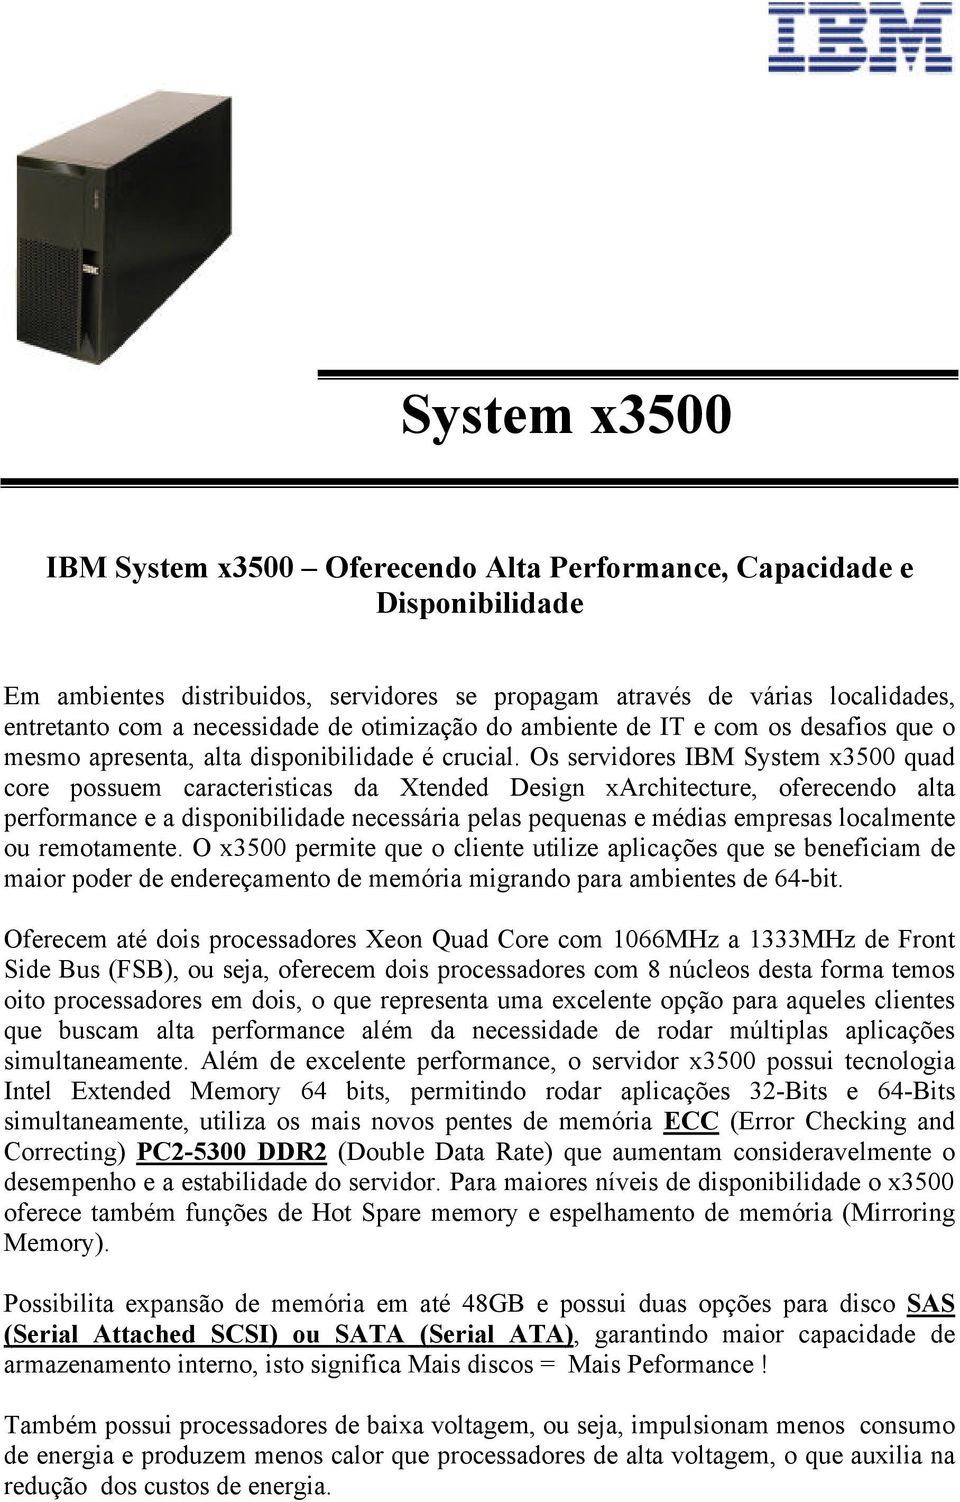 Os servidores IBM System x3500 quad core possuem caracteristicas da Xtended Design xarchitecture, oferecendo alta performance e a disponibilidade necessária pelas pequenas e médias empresas